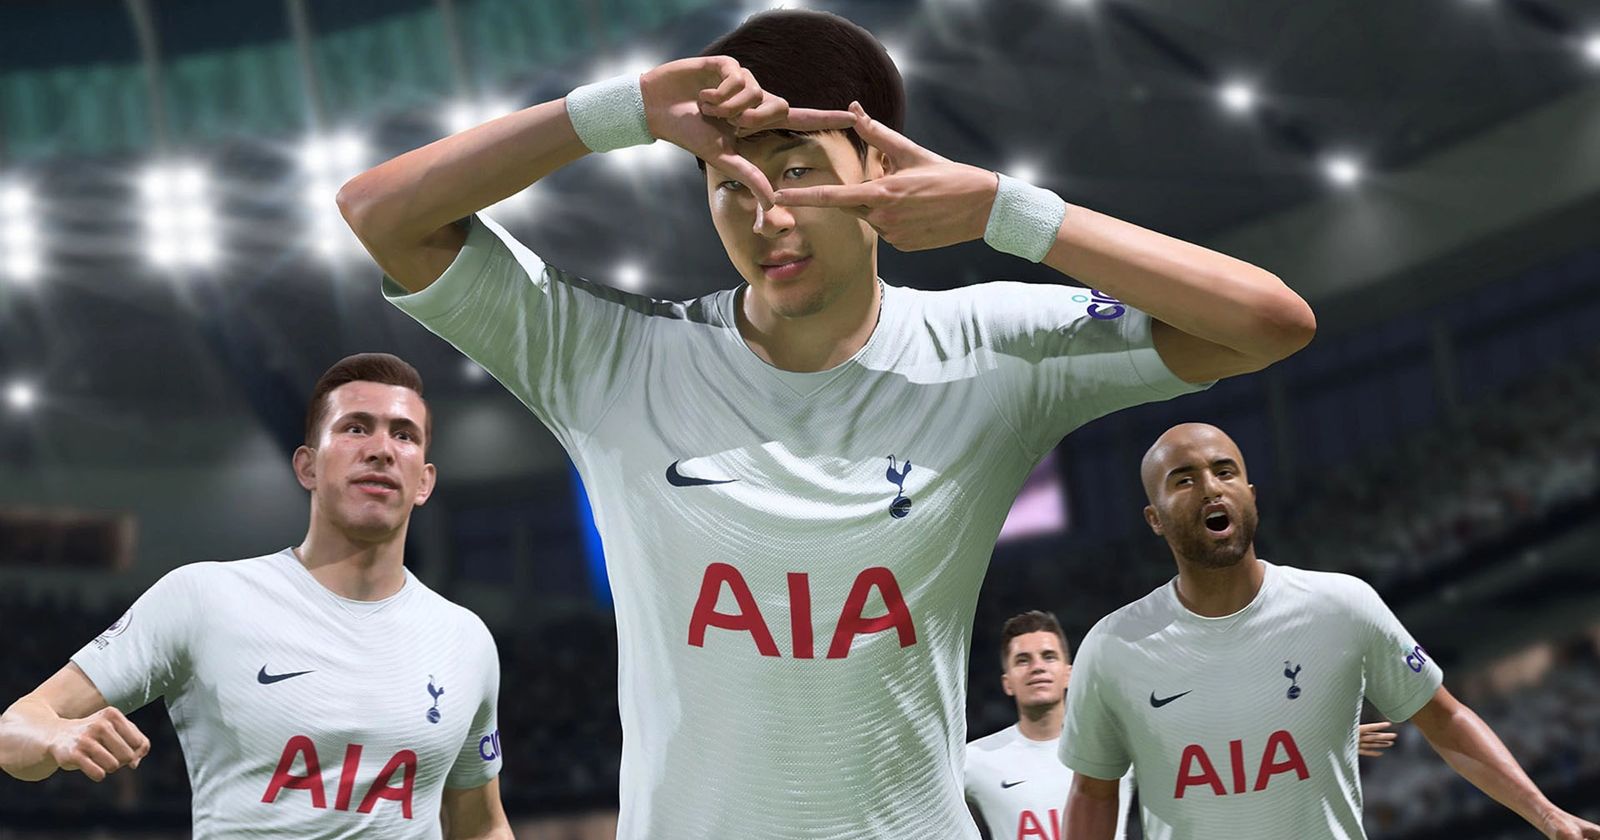 EA FC 24 Tottenham Hotspur - Career Mode